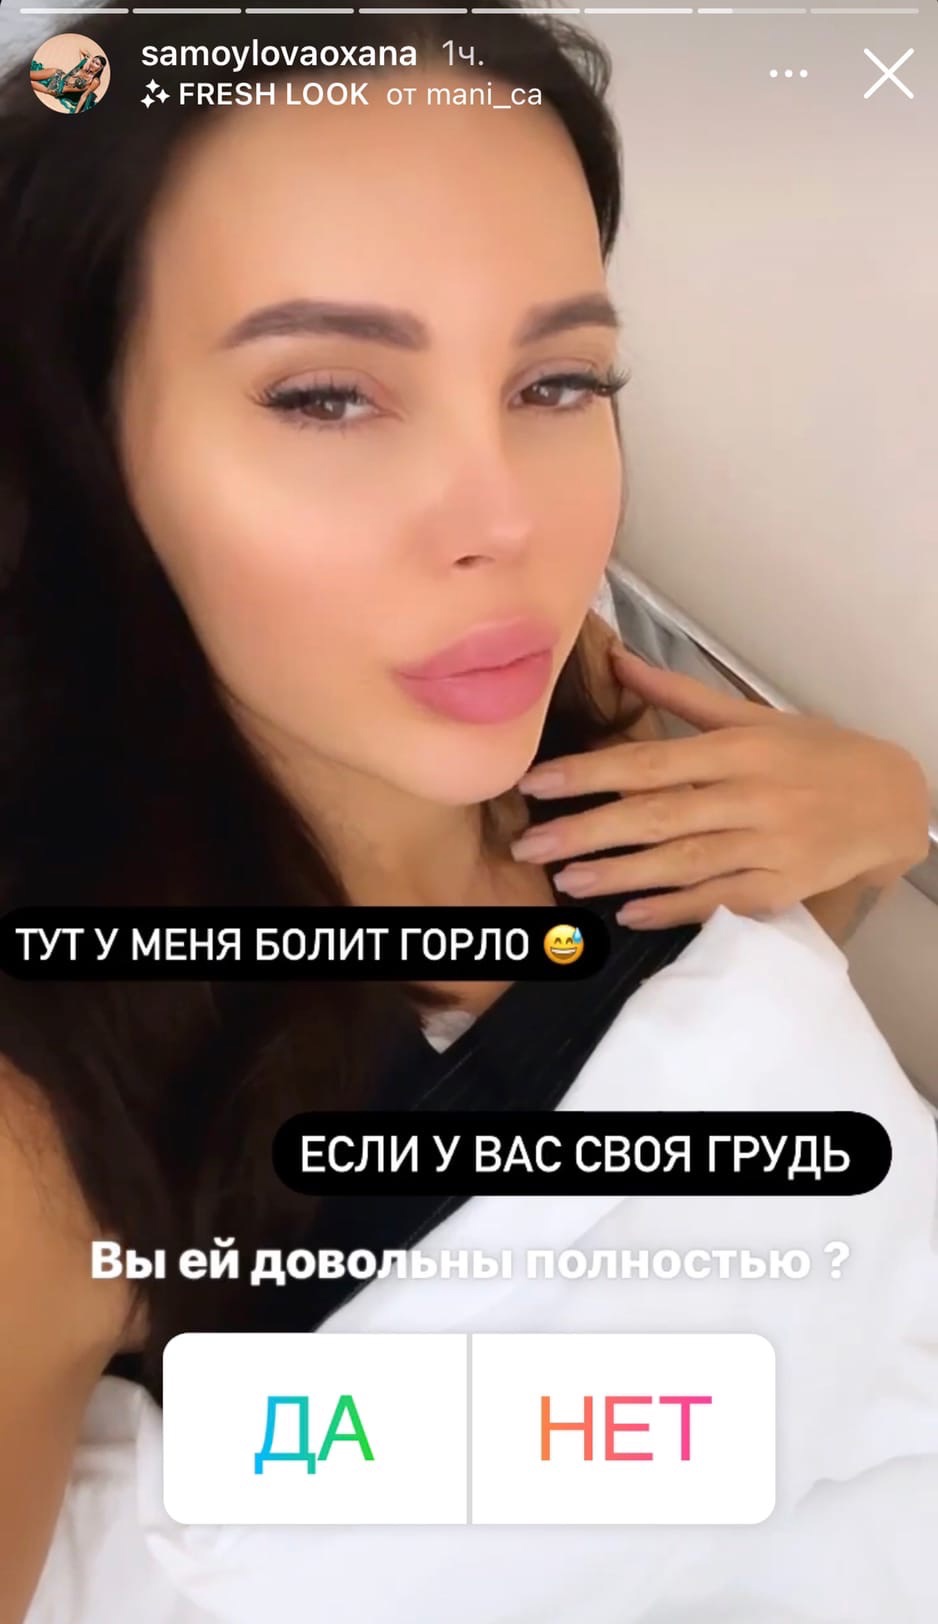 Оксана Самойлова сделала пластическую операцию
